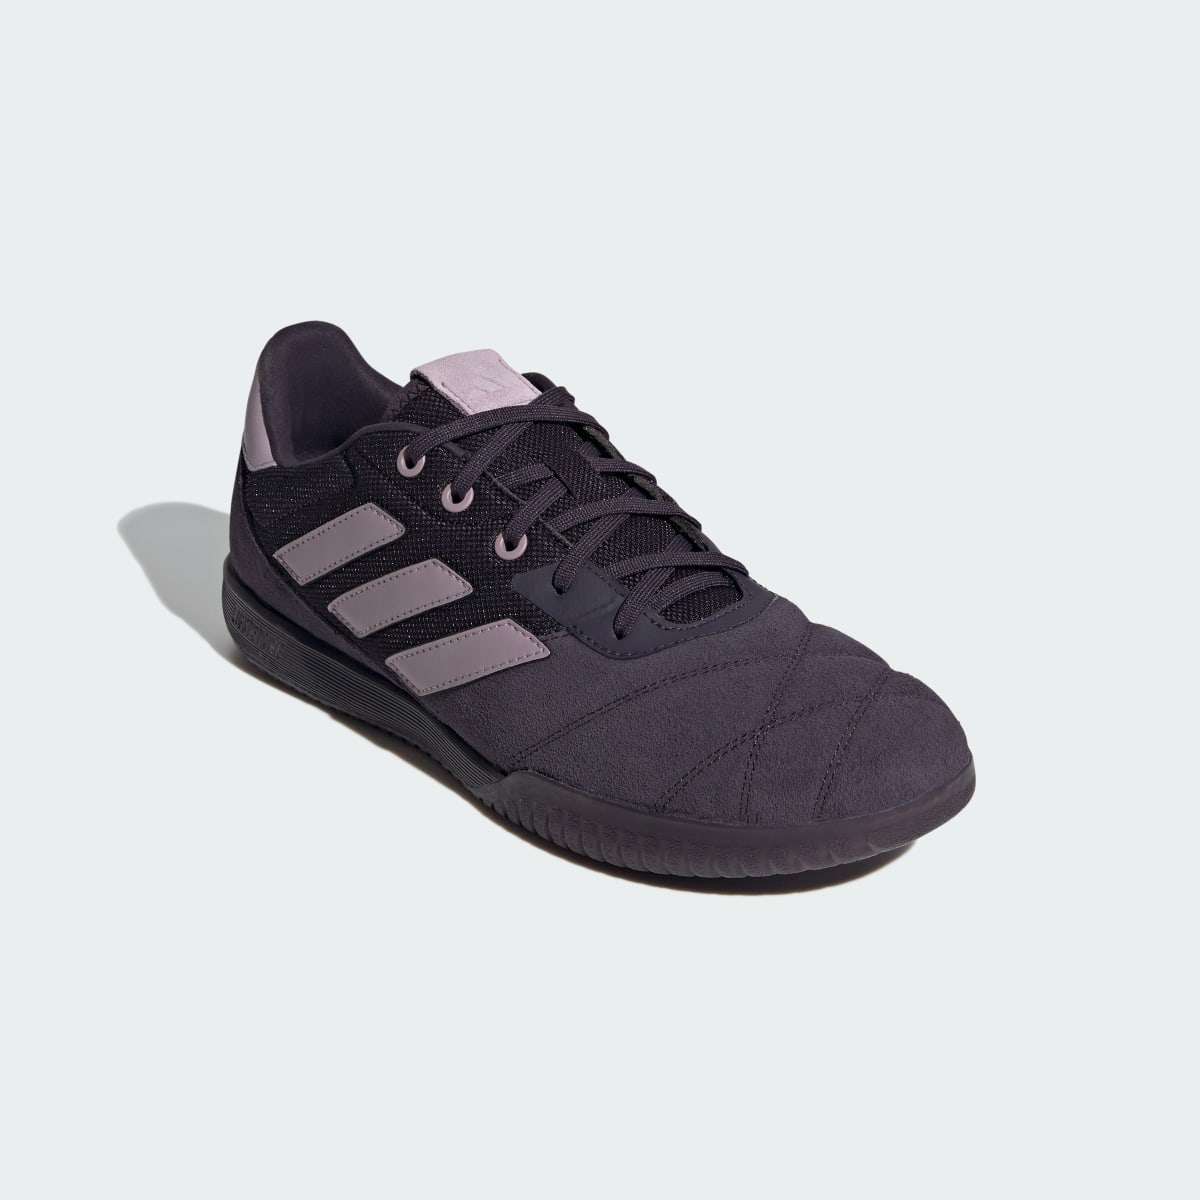 Adidas Copa Gloro Indoor Boots. 5